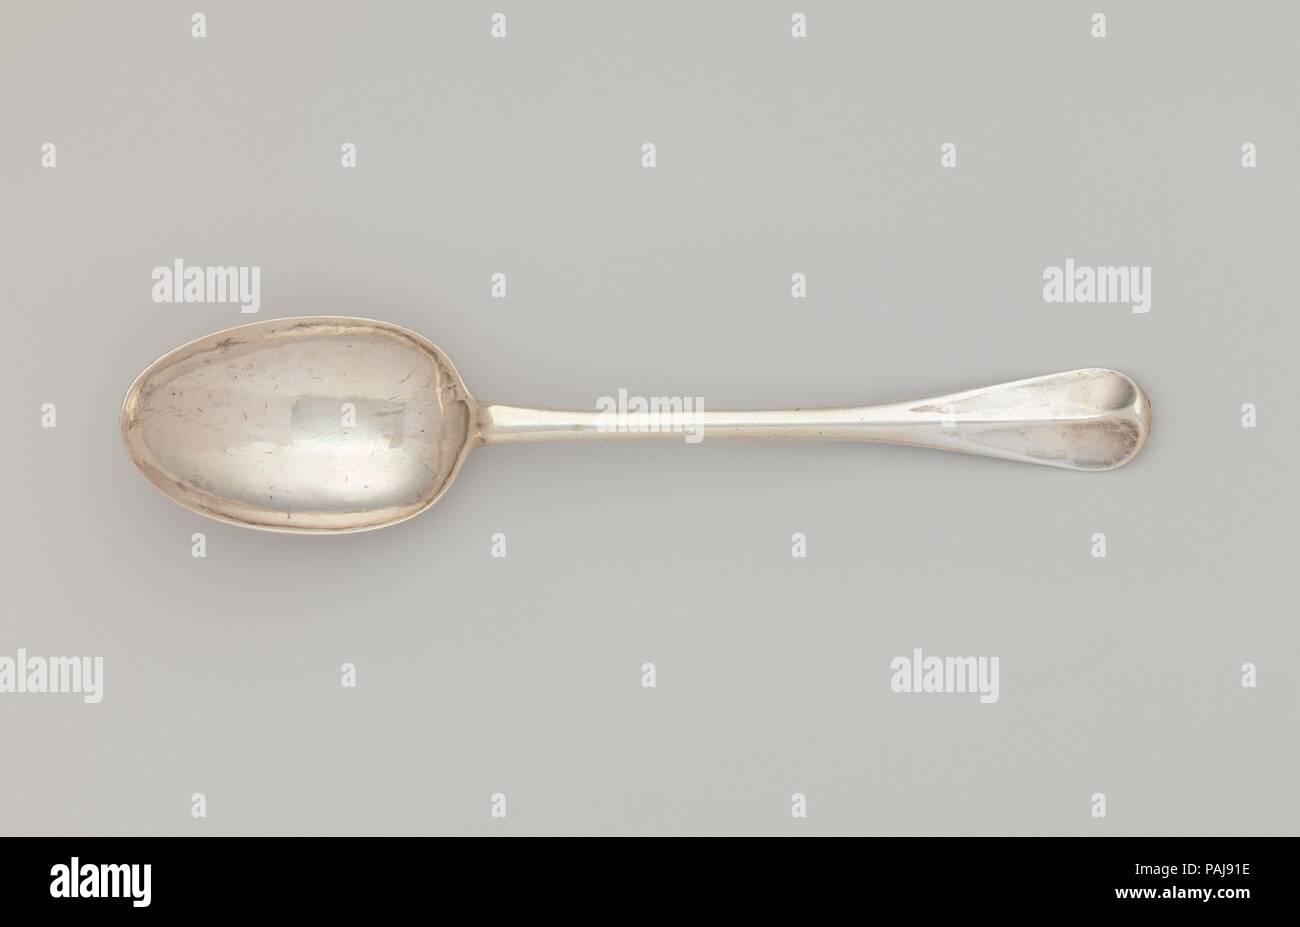 Spoon. Culture: American. Dimensions: L. 8 1/8 in. (20.6 cm). Maker: John Tanner (1713-1785). Date: ca. 1750. Museum: Metropolitan Museum of Art, New York, USA. Stock Photo